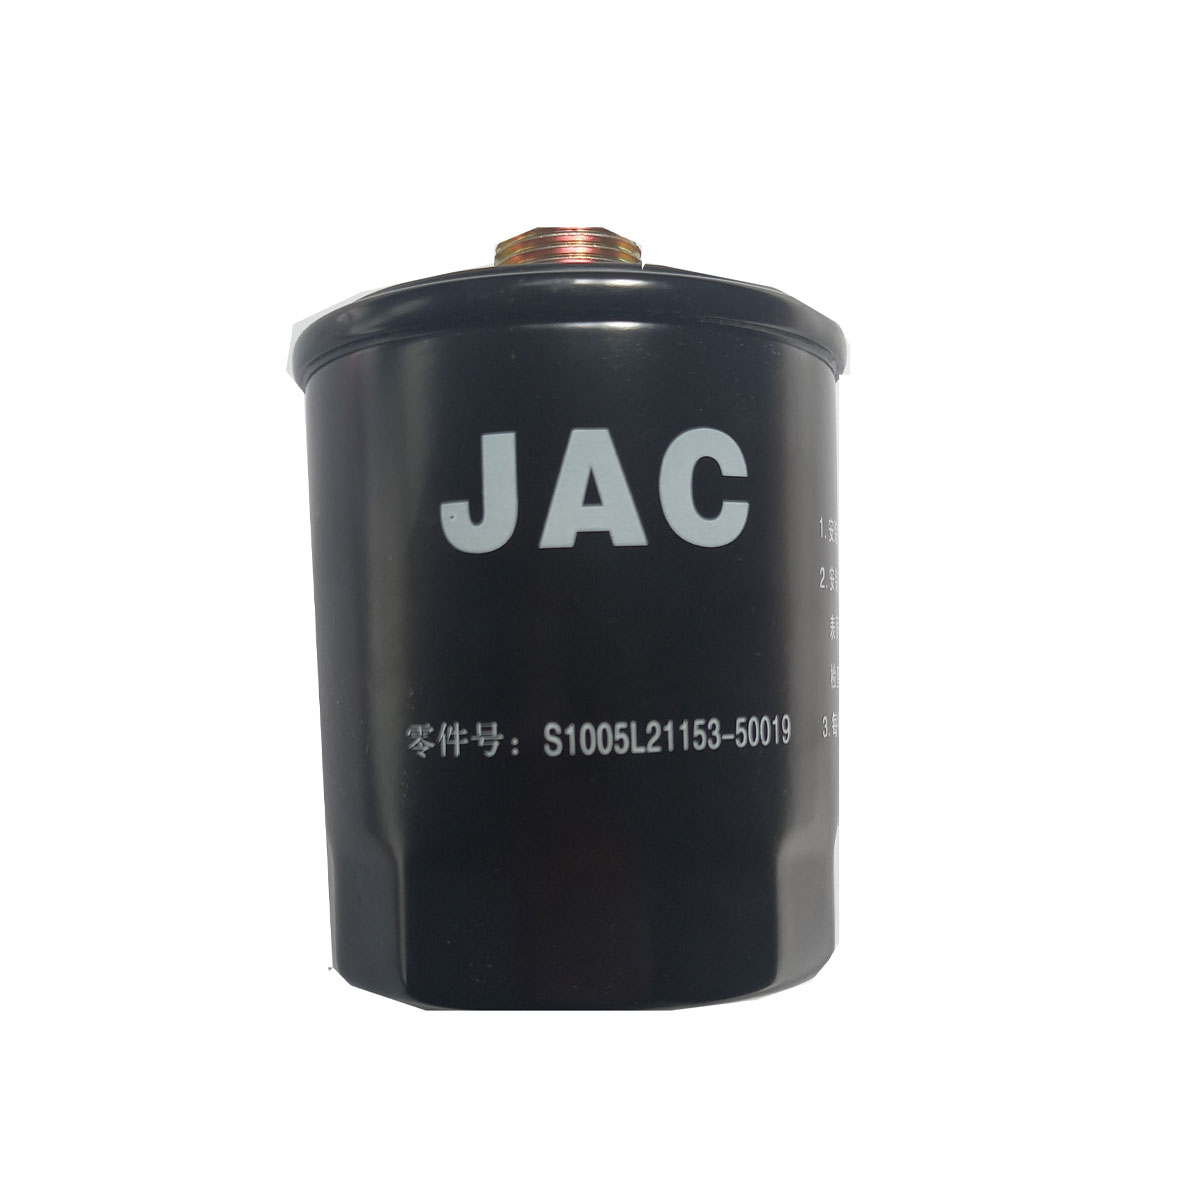 فیلتر روغن خودرو جک مدل 50019 مناسب برای خودروی جک J5